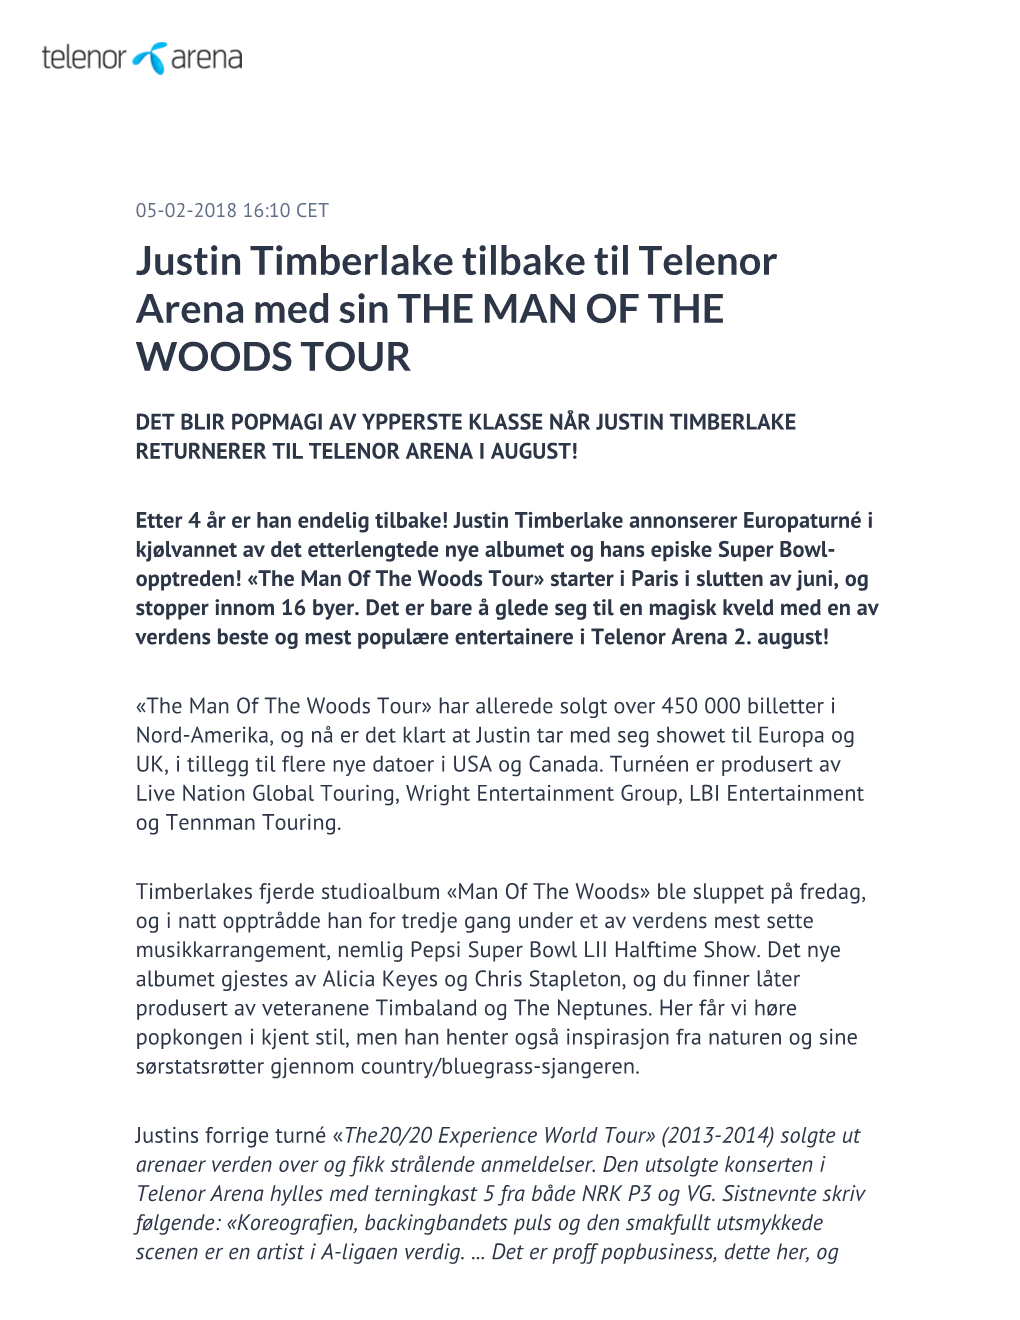 Justin Timberlake Tilbake Til Telenor Arena Med Sin the MAN of the WOODS TOUR